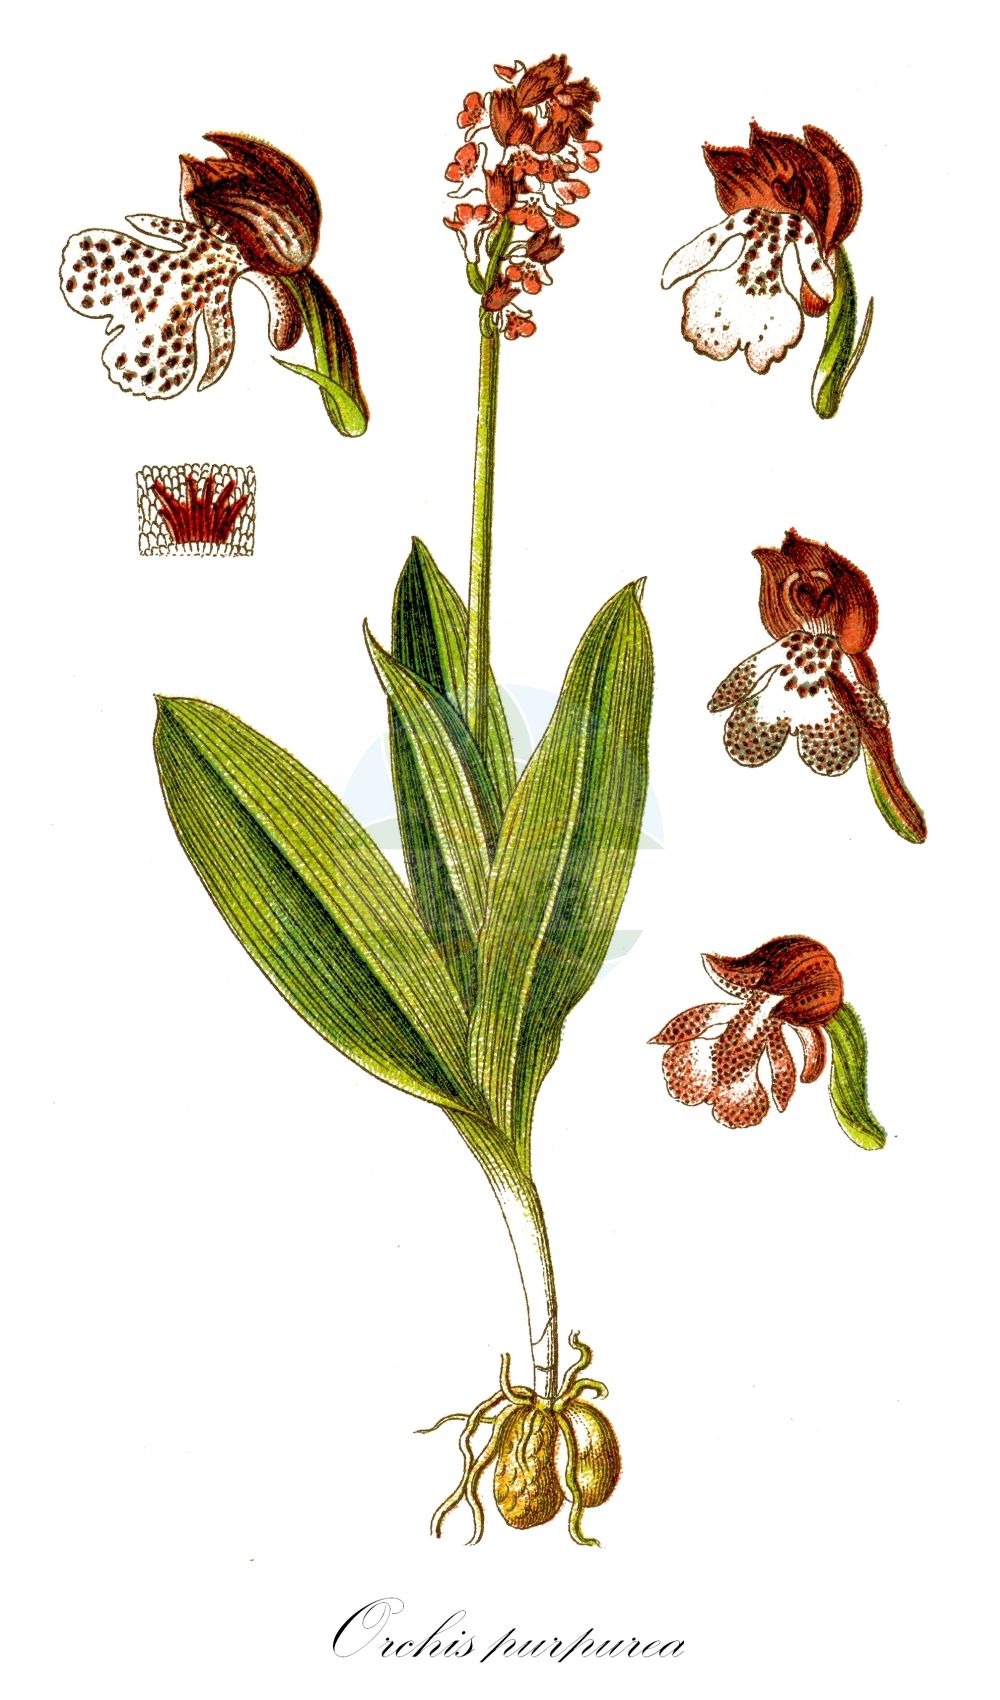 Historische Abbildung von Orchis purpurea (Purpur-Knabenkraut - Lady Orchid). Das Bild zeigt Blatt, Bluete, Frucht und Same. ---- Historical Drawing of Orchis purpurea (Purpur-Knabenkraut - Lady Orchid). The image is showing leaf, flower, fruit and seed.(Orchis purpurea,Purpur-Knabenkraut,Lady Orchid,Orchis purpurea,Purpur-Knabenkraut,Braunrotes Knabenkraut,Lady Orchid,Orchis,Knabenkraut,Orchidaceae,Knabenkrautgewächse,Orchid family,Blatt,Bluete,Frucht,Same,leaf,flower,fruit,seed,Sturm (1796f))